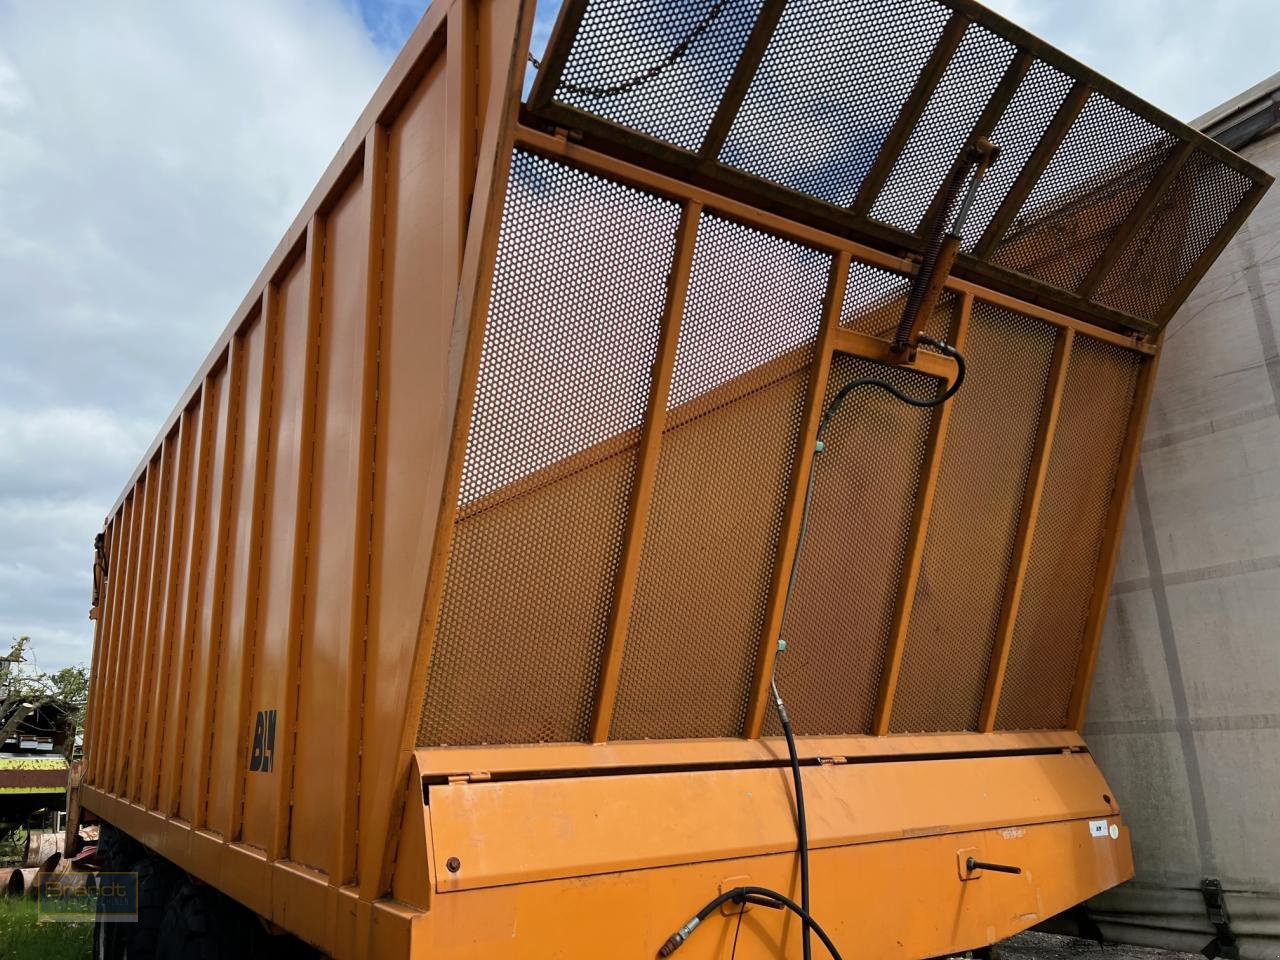 Häcksel Transportwagen des Typs Sonstige Krustijens BLW 55 m3, Gebrauchtmaschine in Oyten (Bild 1)